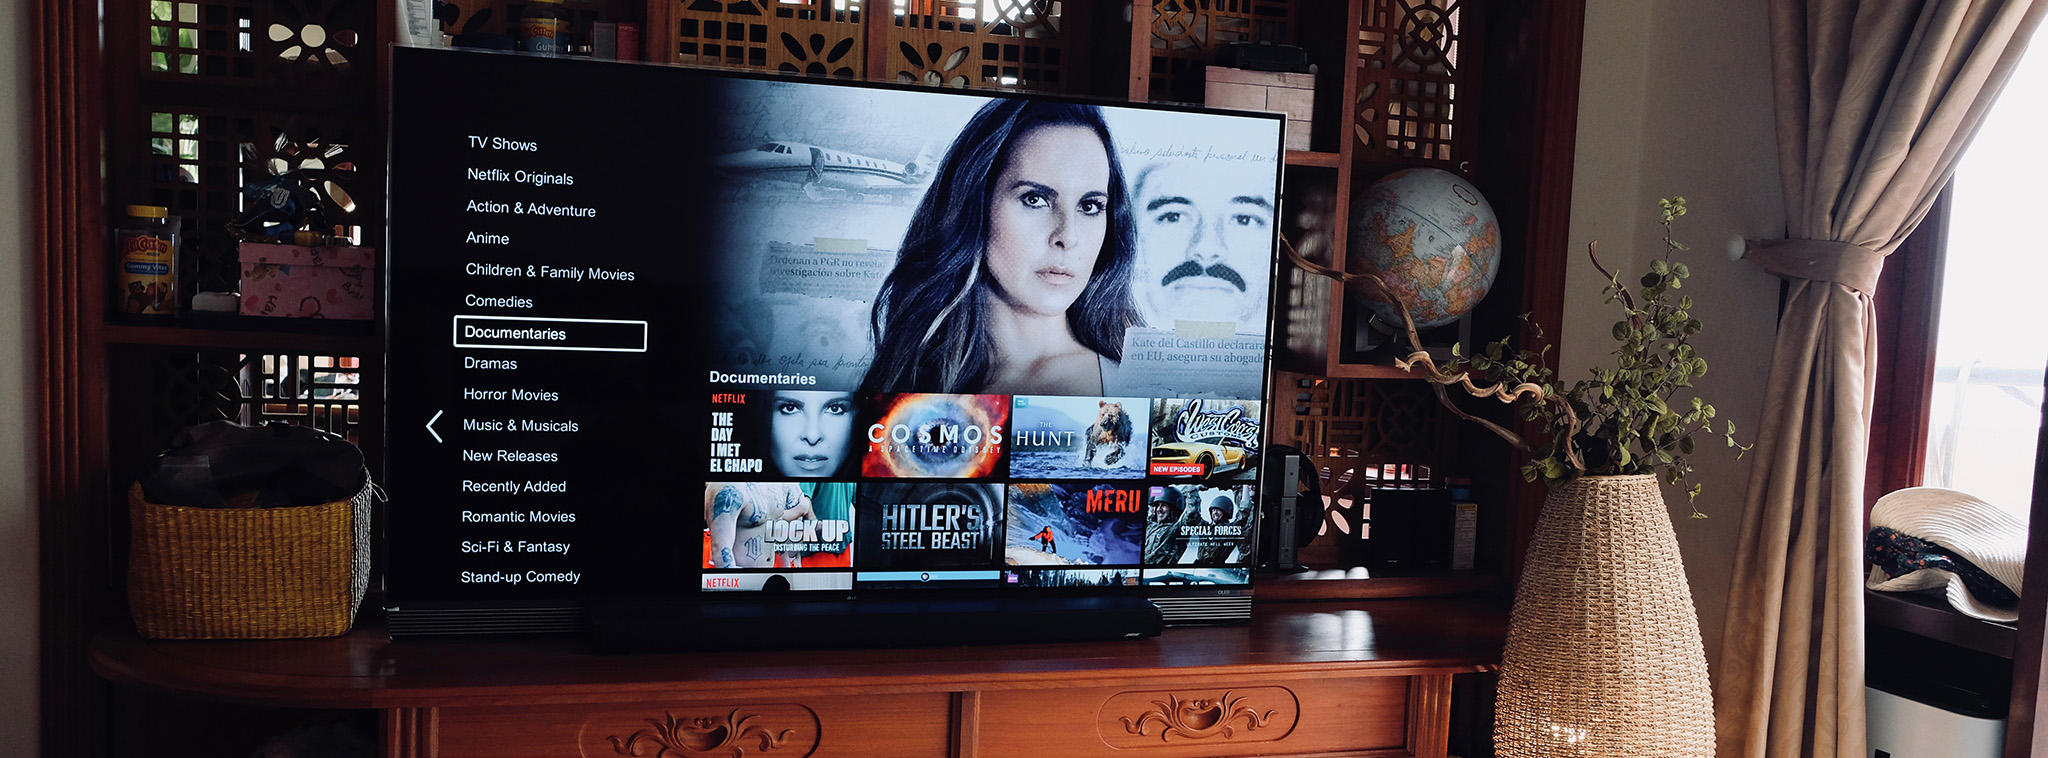 Đã có thể xem Netflix HDR trên máy tính Windows 10